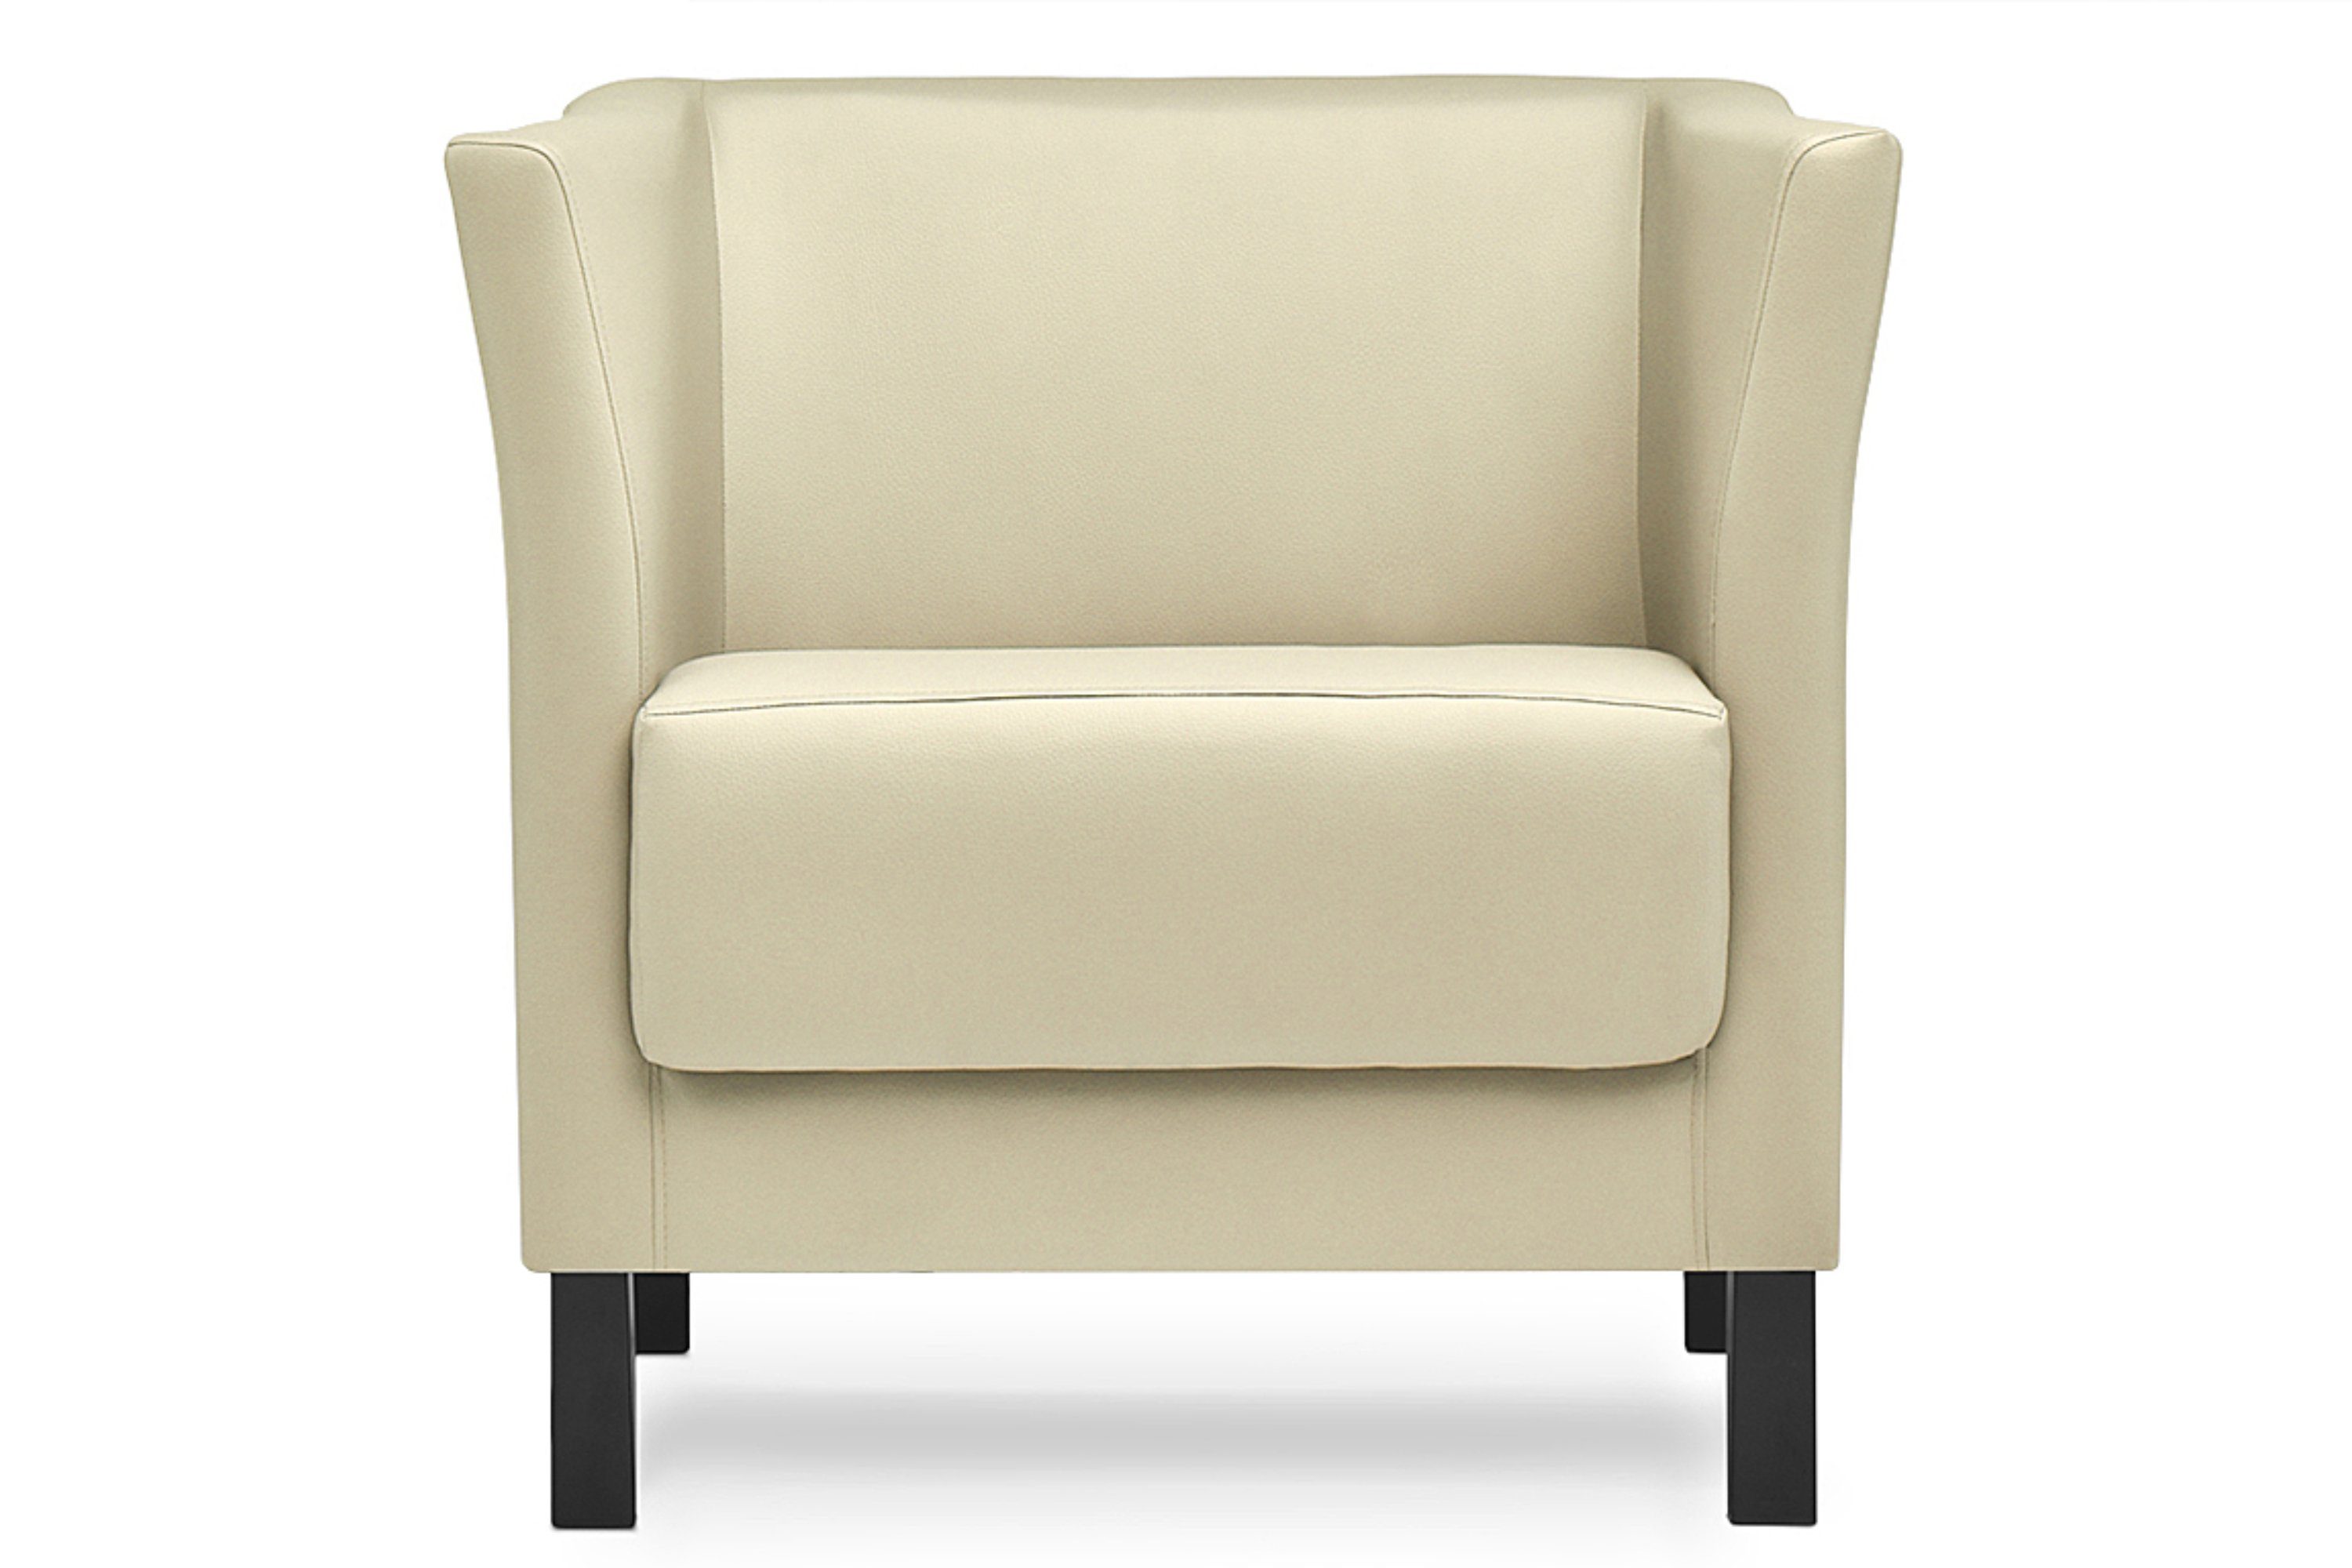 Konsimo Sessel | hohe Kunstleder creme Creme Sessel, ESPECTO | Rückenlehne, hohe Massivholzbeine, creme und Sitzfläche weiche